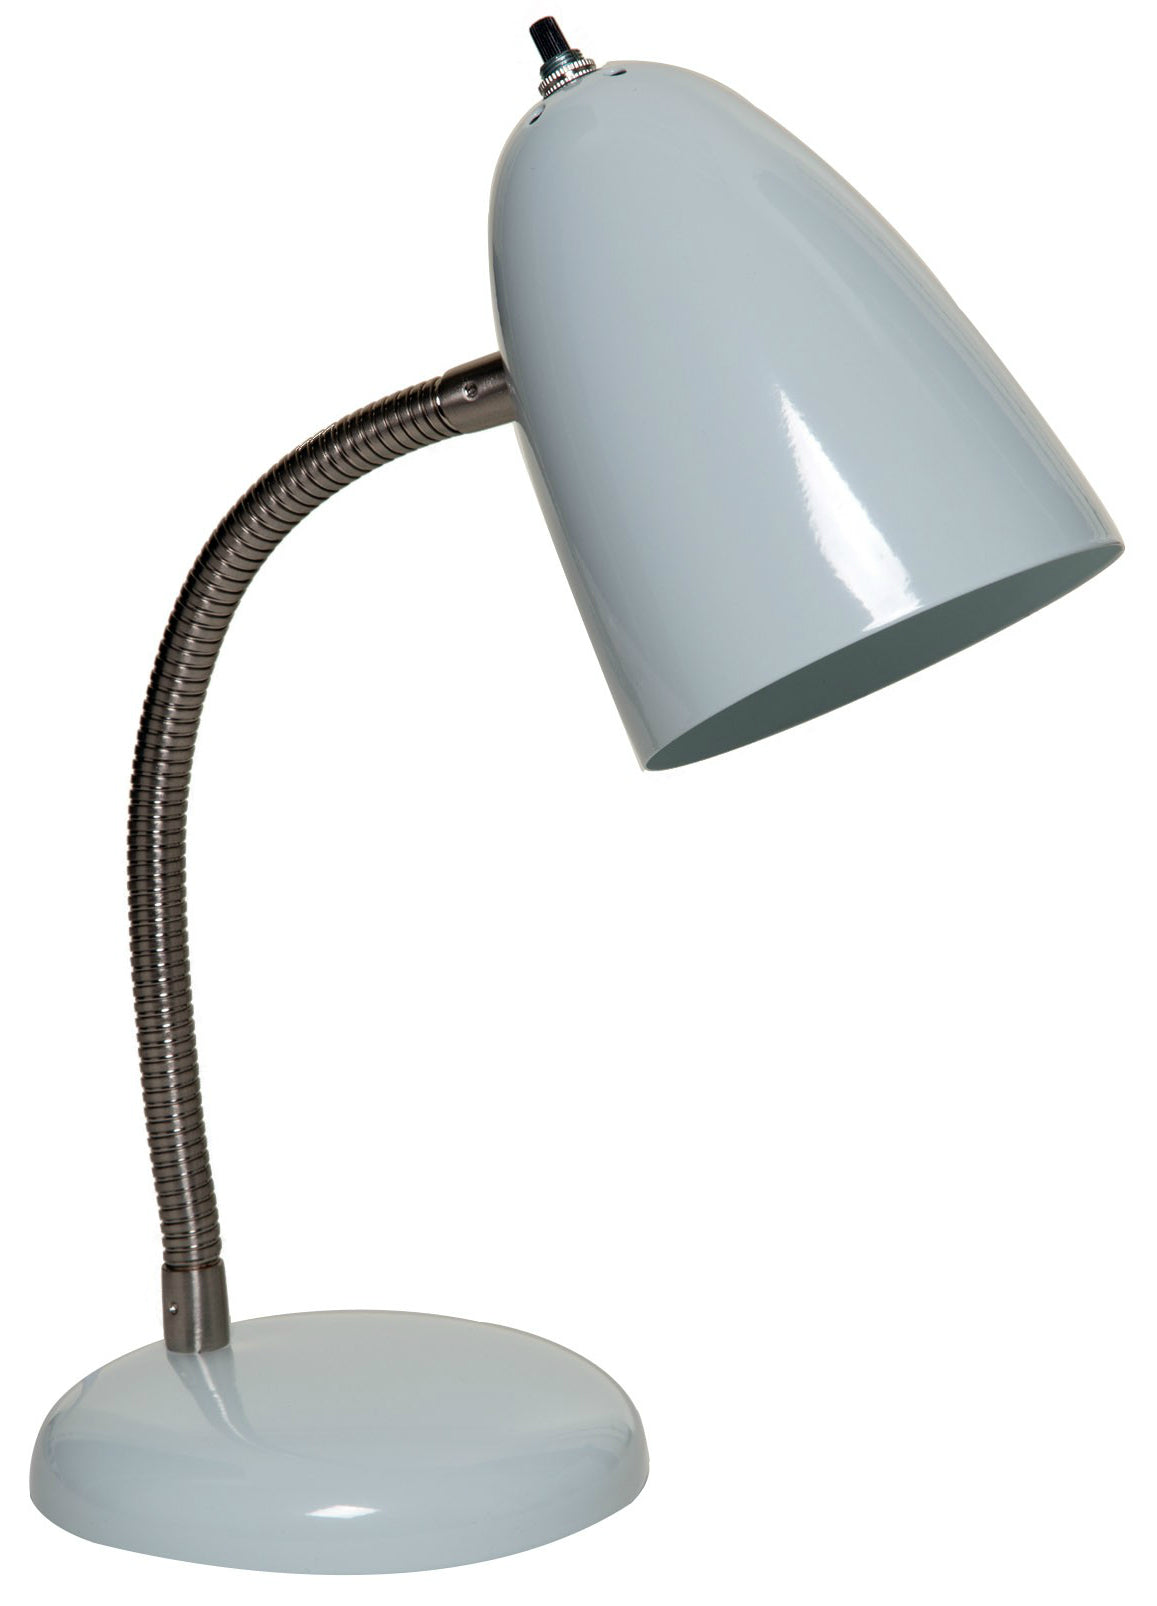 Boston Harbor TL-TB-170-WH3L Flexible Table Lamp, 16-1/2", White